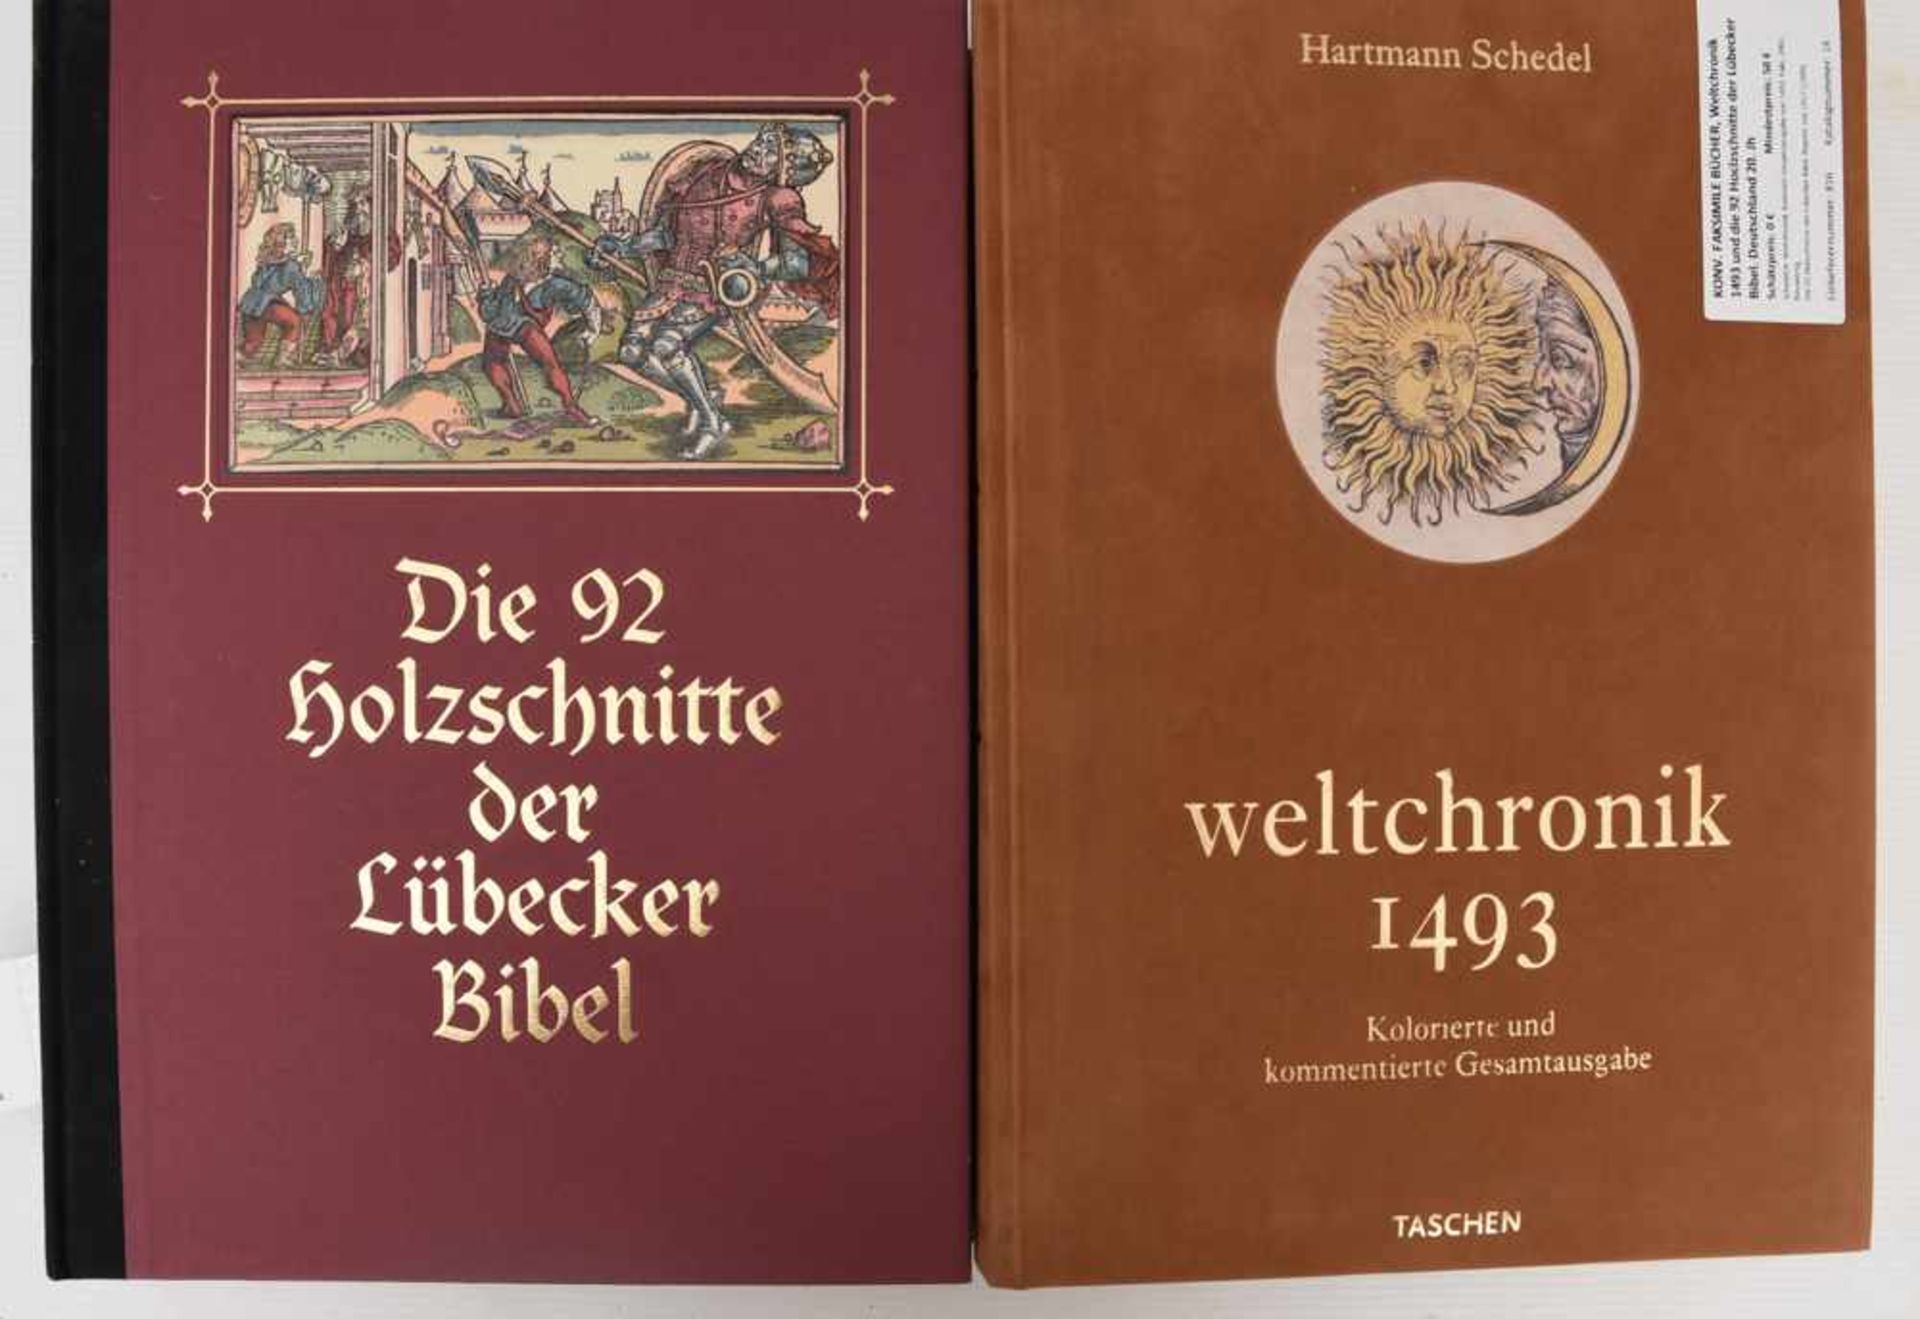 KONV. FAKSIMILE BÜCHER, Weltchronik 1493 und die 92 Holzschnitte der Lübecker Bibel. Deutschland 20.